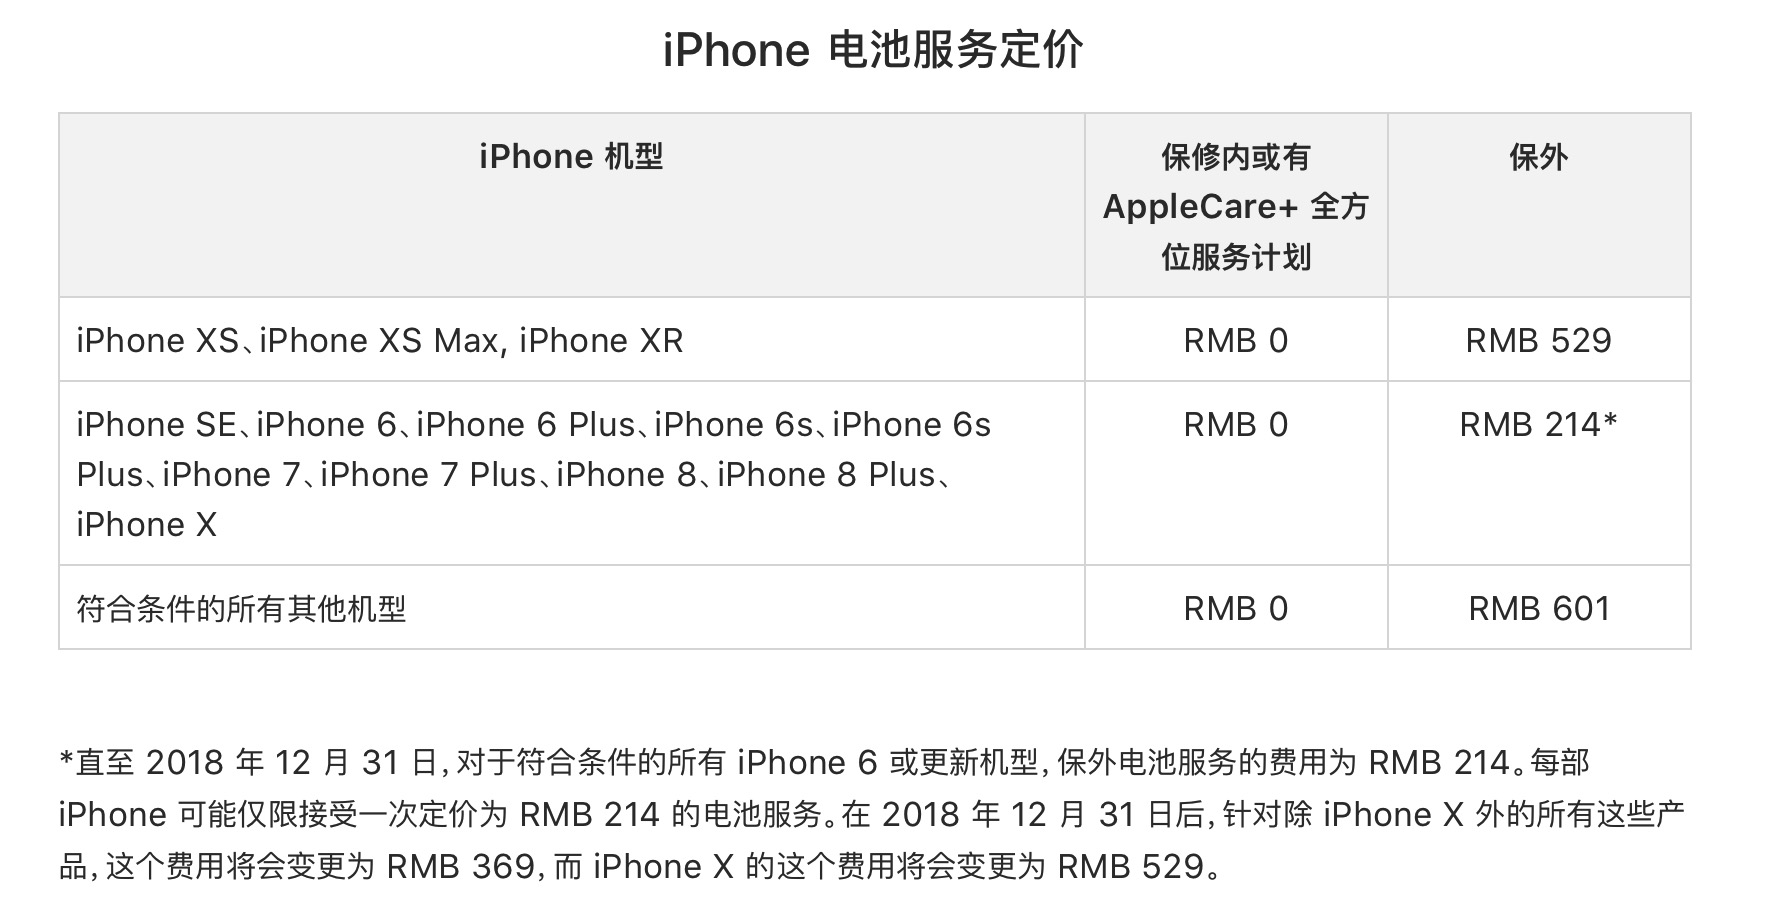 公布的iphone xs和iphone xs max保外维修价格分别是549美元和599美元